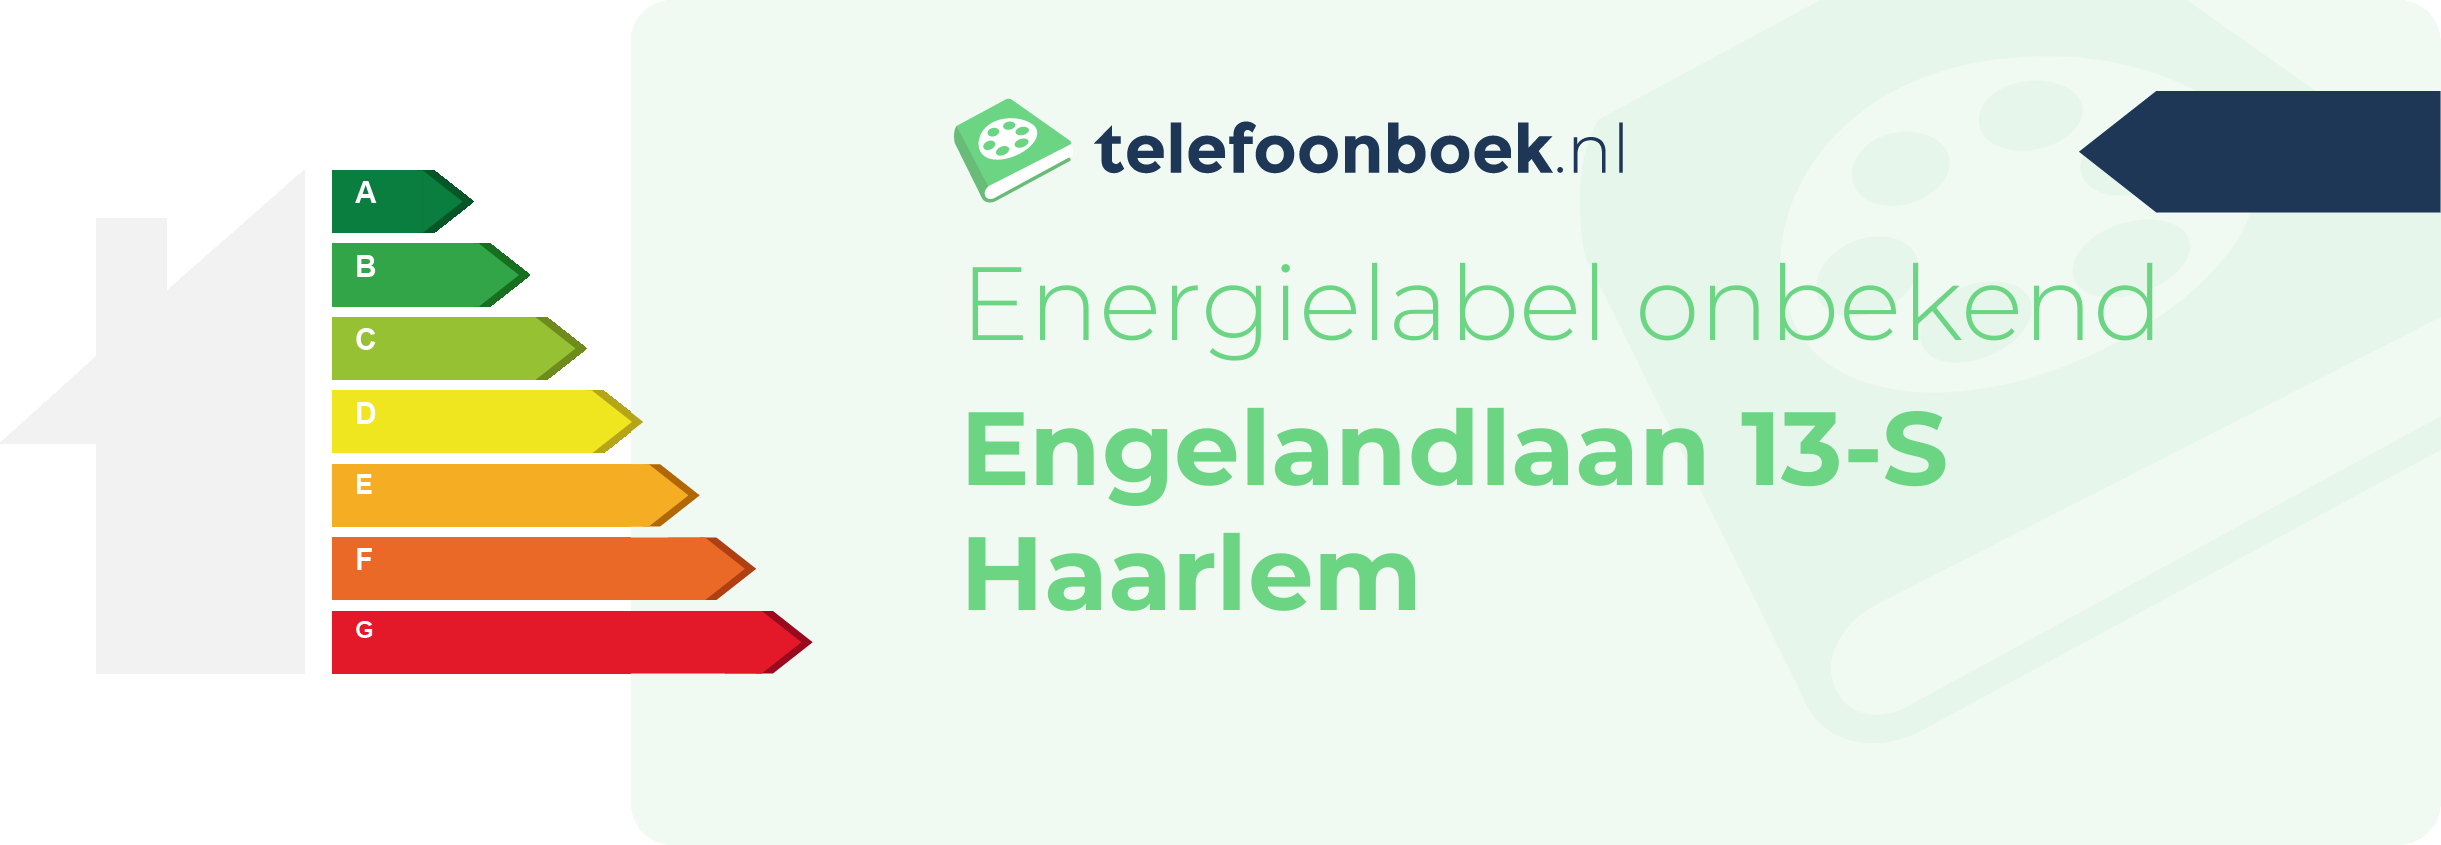 Energielabel Engelandlaan 13-S Haarlem